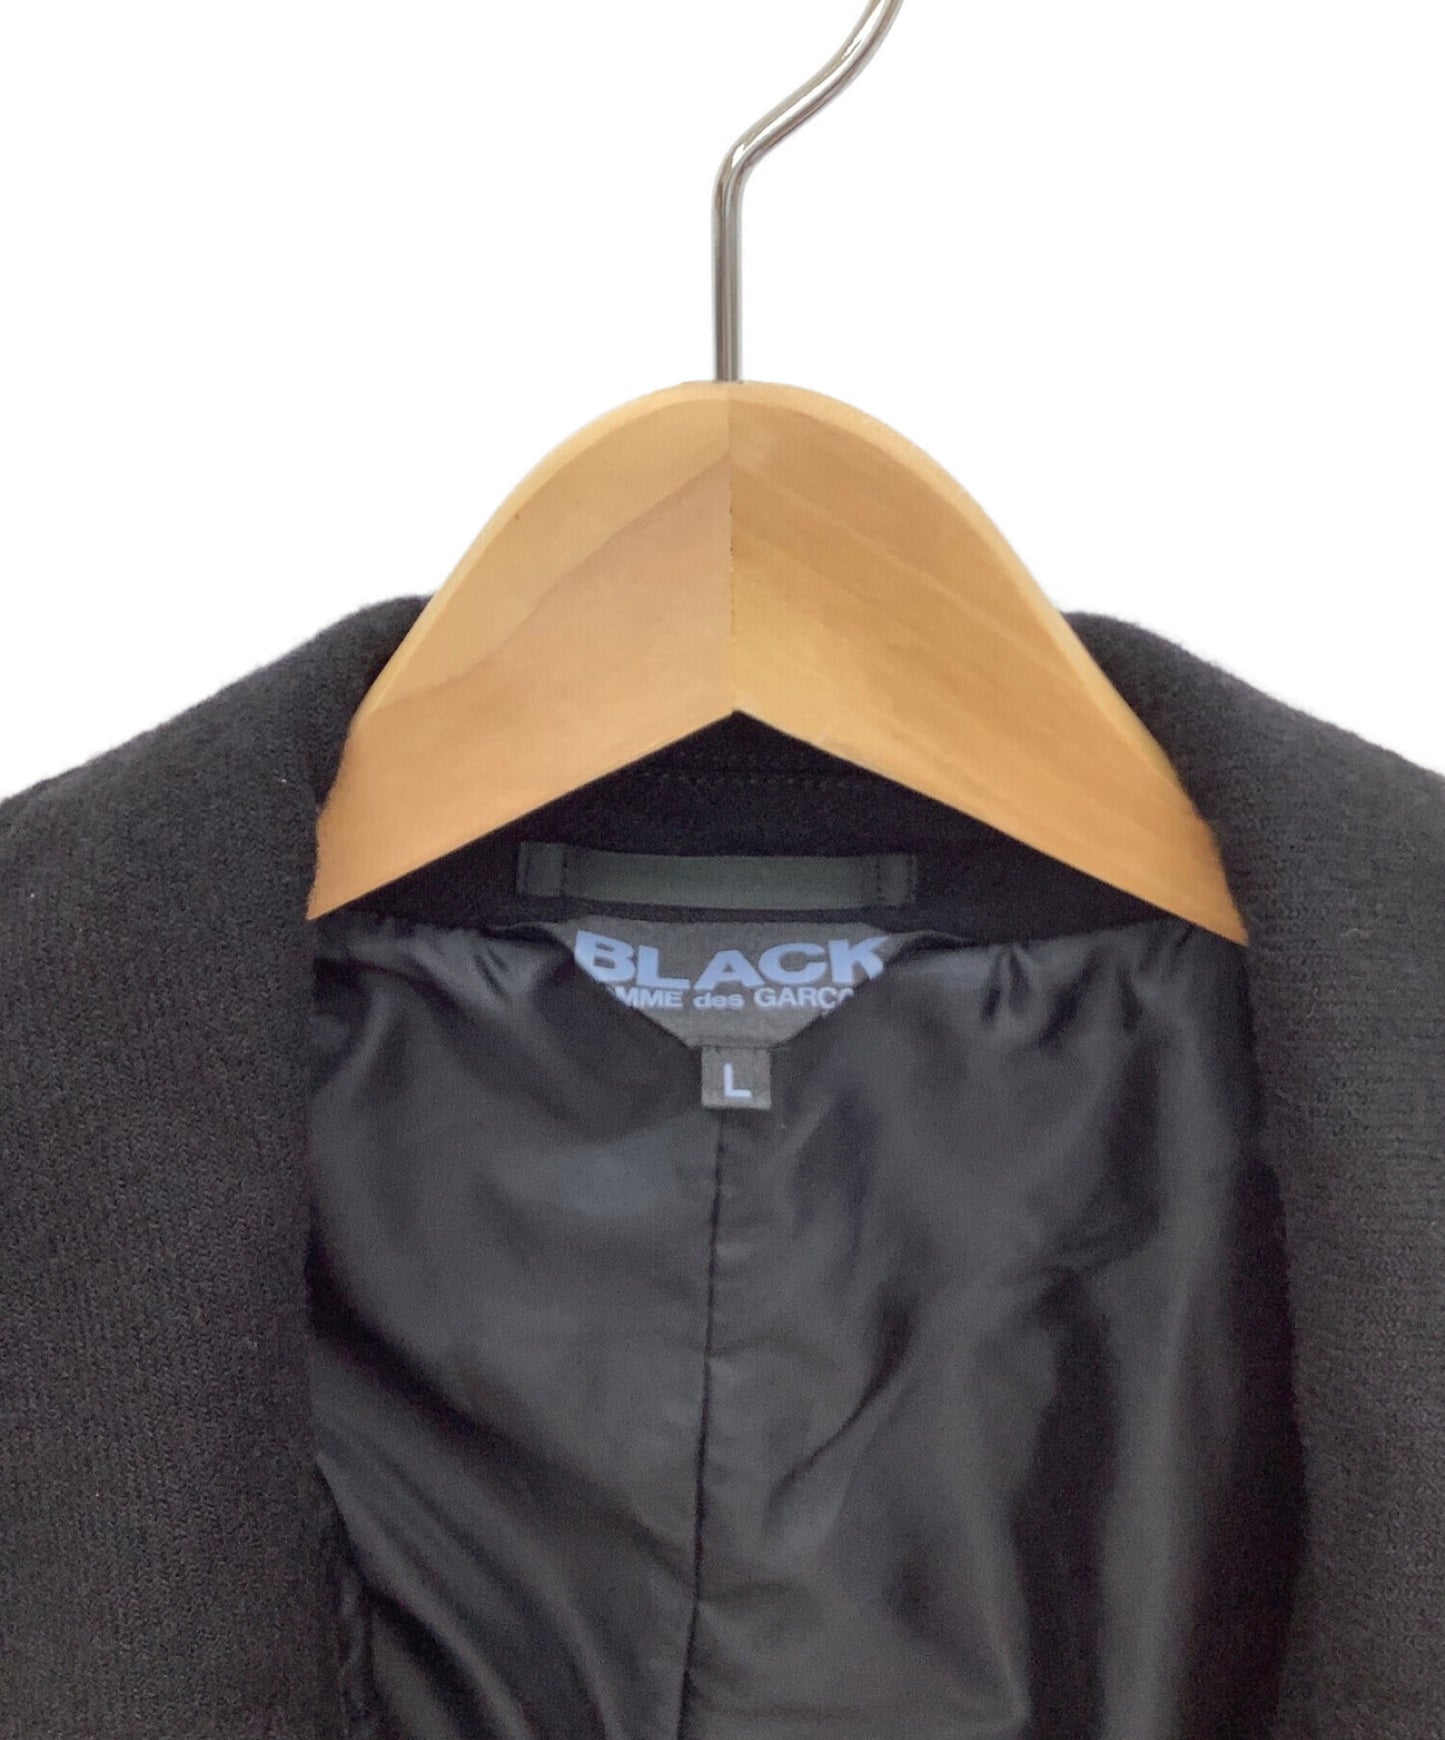 Black Comme des garcons ผลิตภัณฑ์ย้อมสีผ้าขนสัตว์ soutain coat 1d-c001